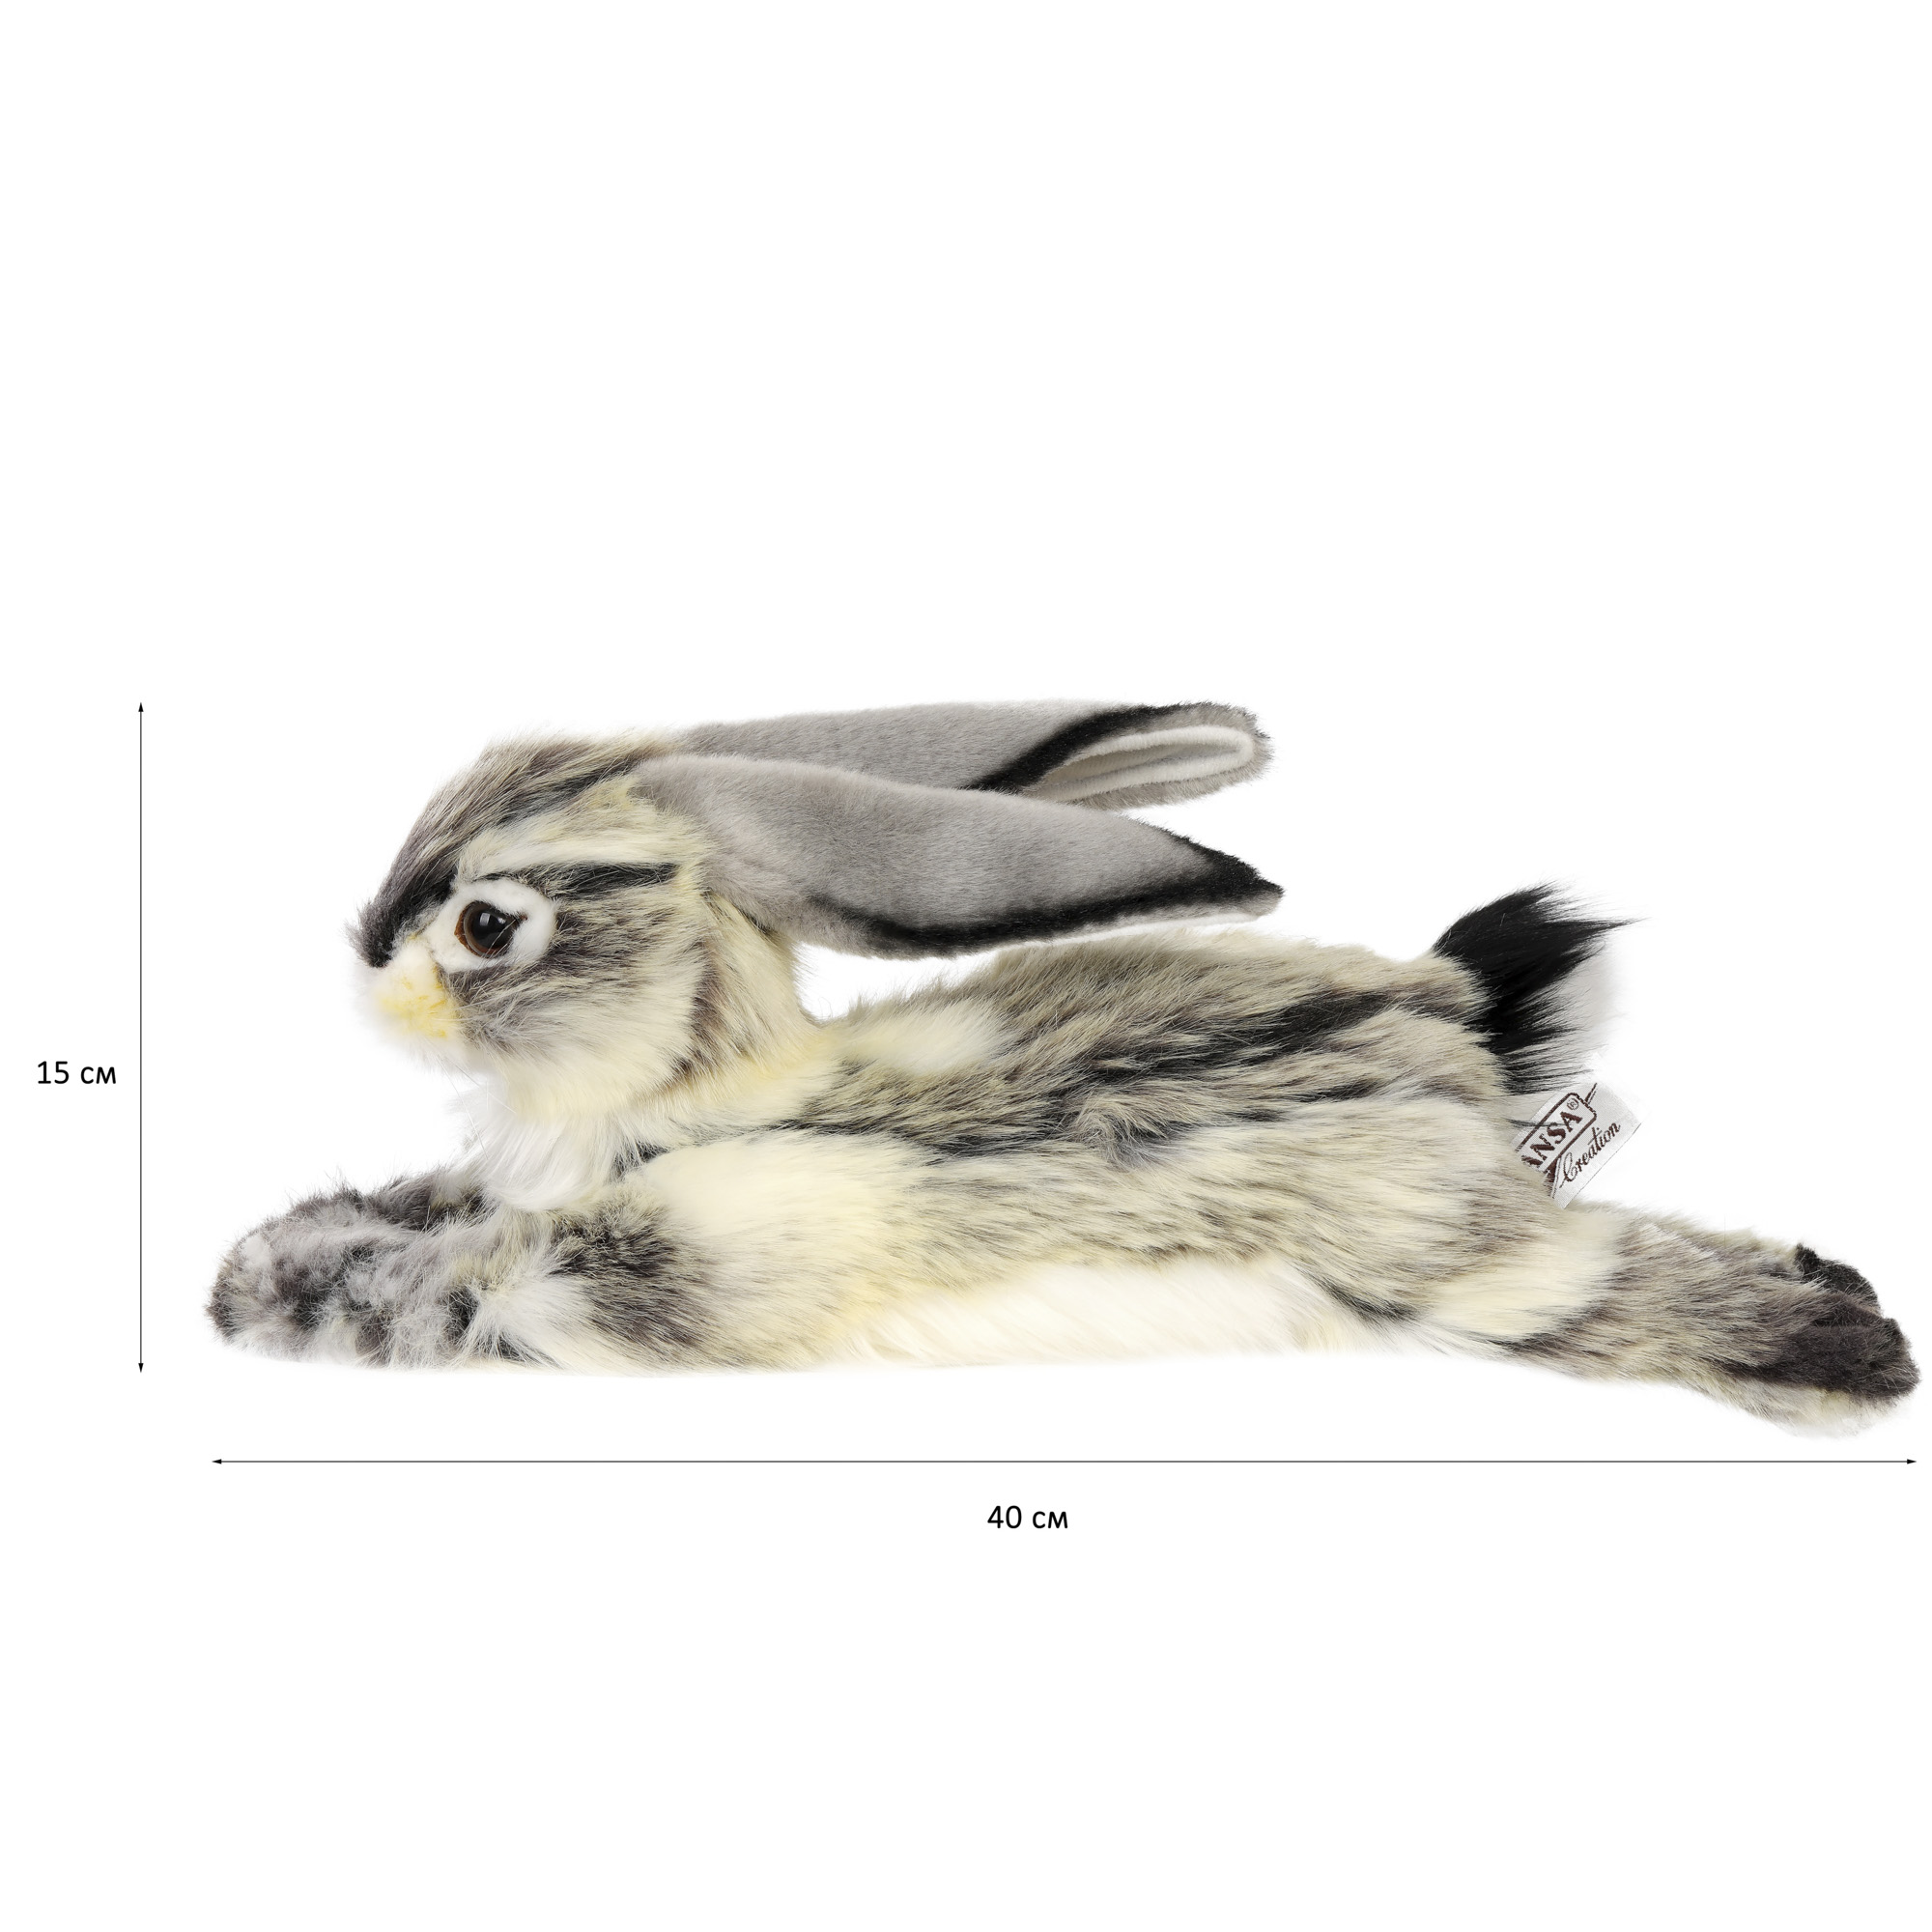 6522 Кролик вислоухий, серый, 40 см